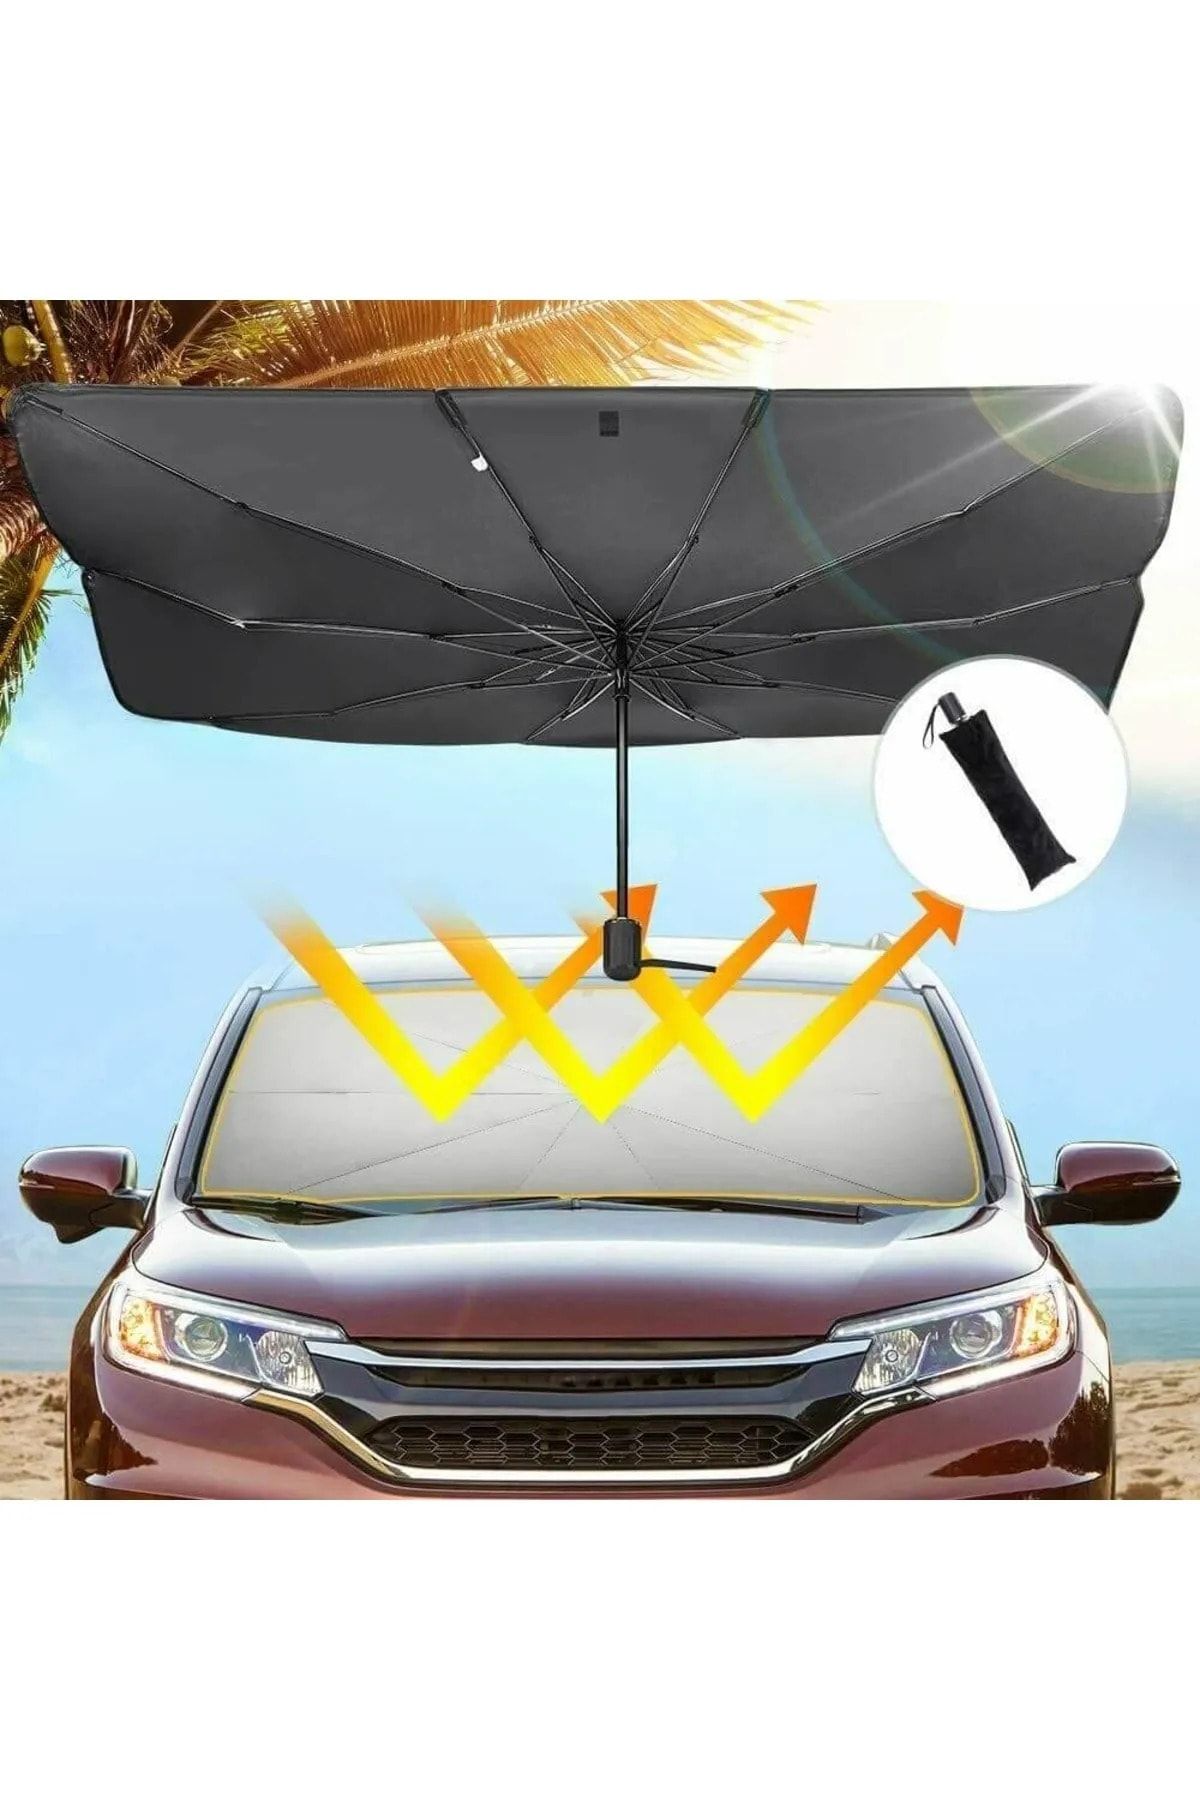 Universal Chery Taxim Araba Ön Cam Güneşlik Katlanabilir Güneşlik Şemsiye Ön Cam Gölgelik